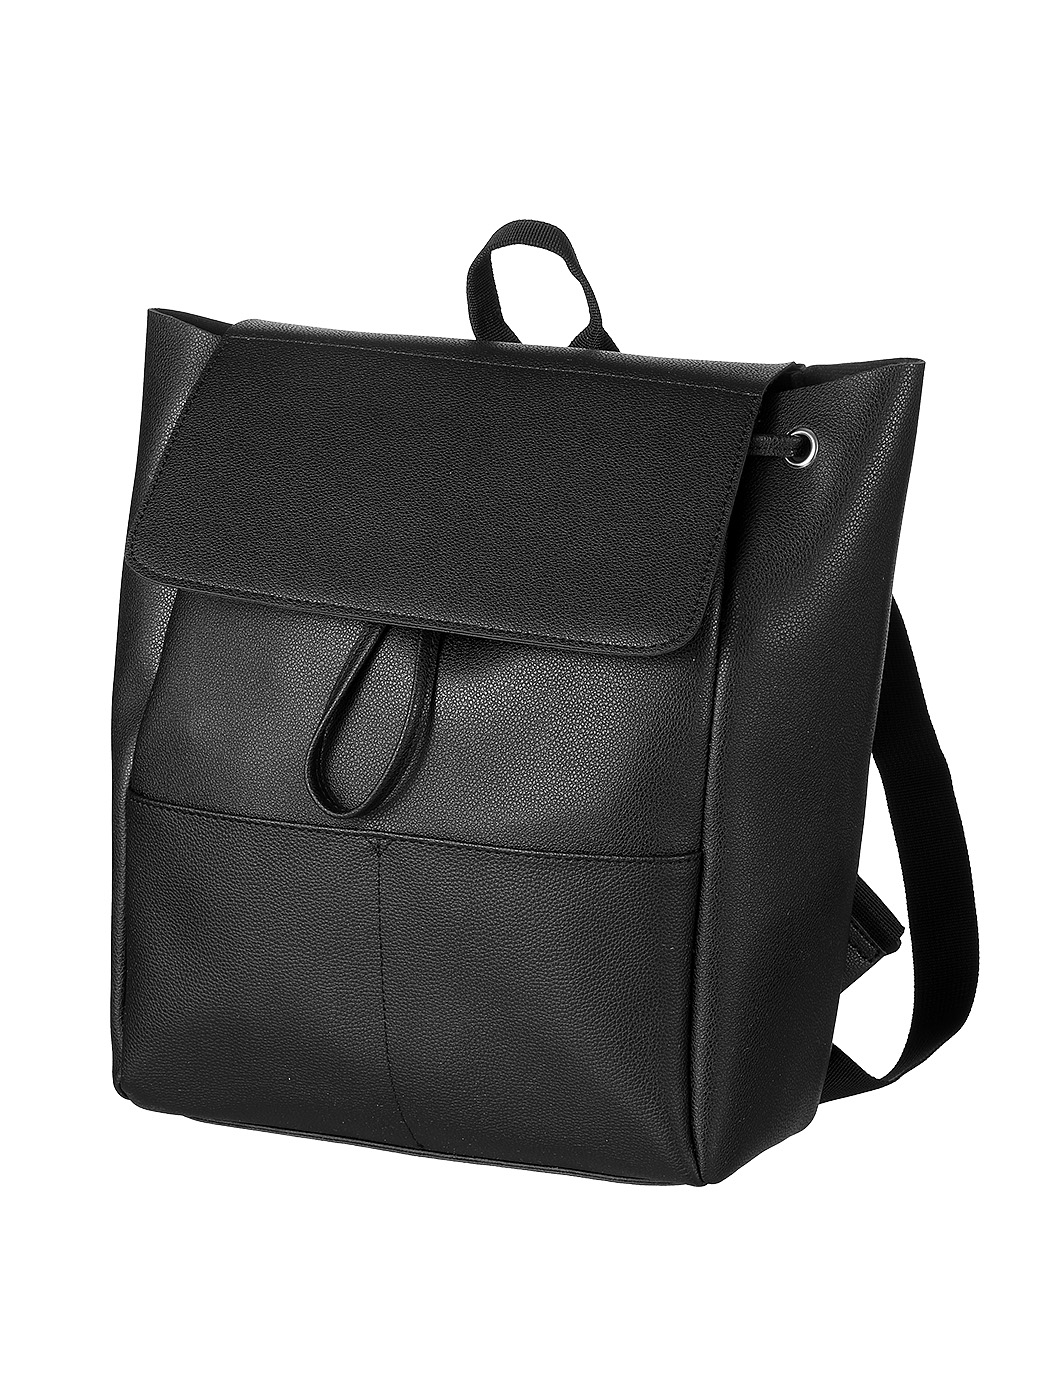 MINISO | Women's Backpack(Black)